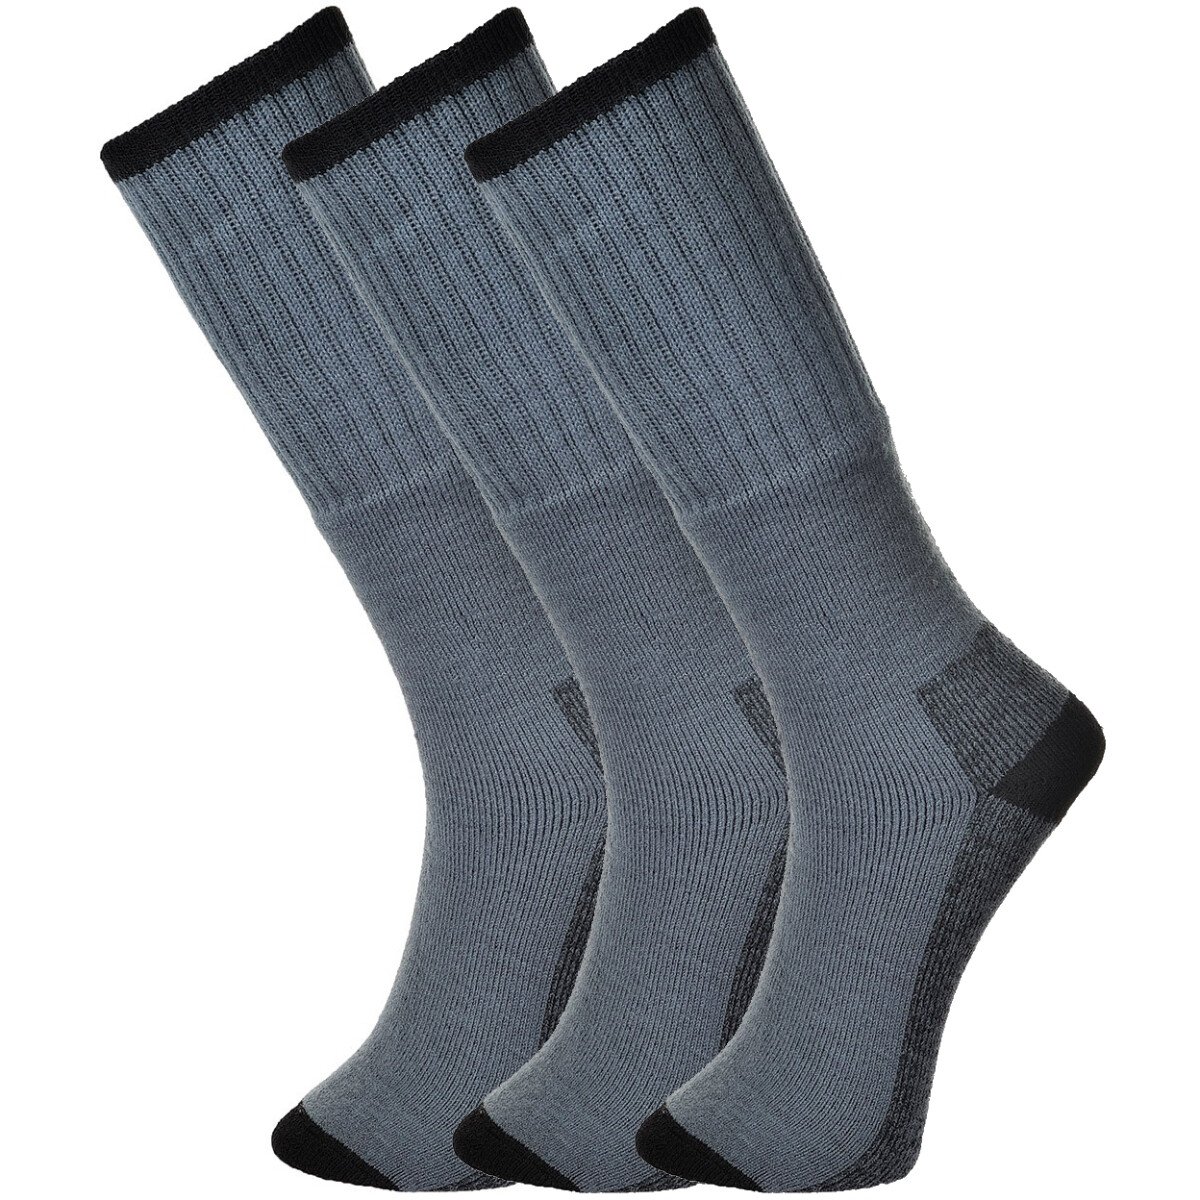 Portwest SK33-Grey Size 10 - Size 13 (EU44 - EU48) Workwear Socks ...